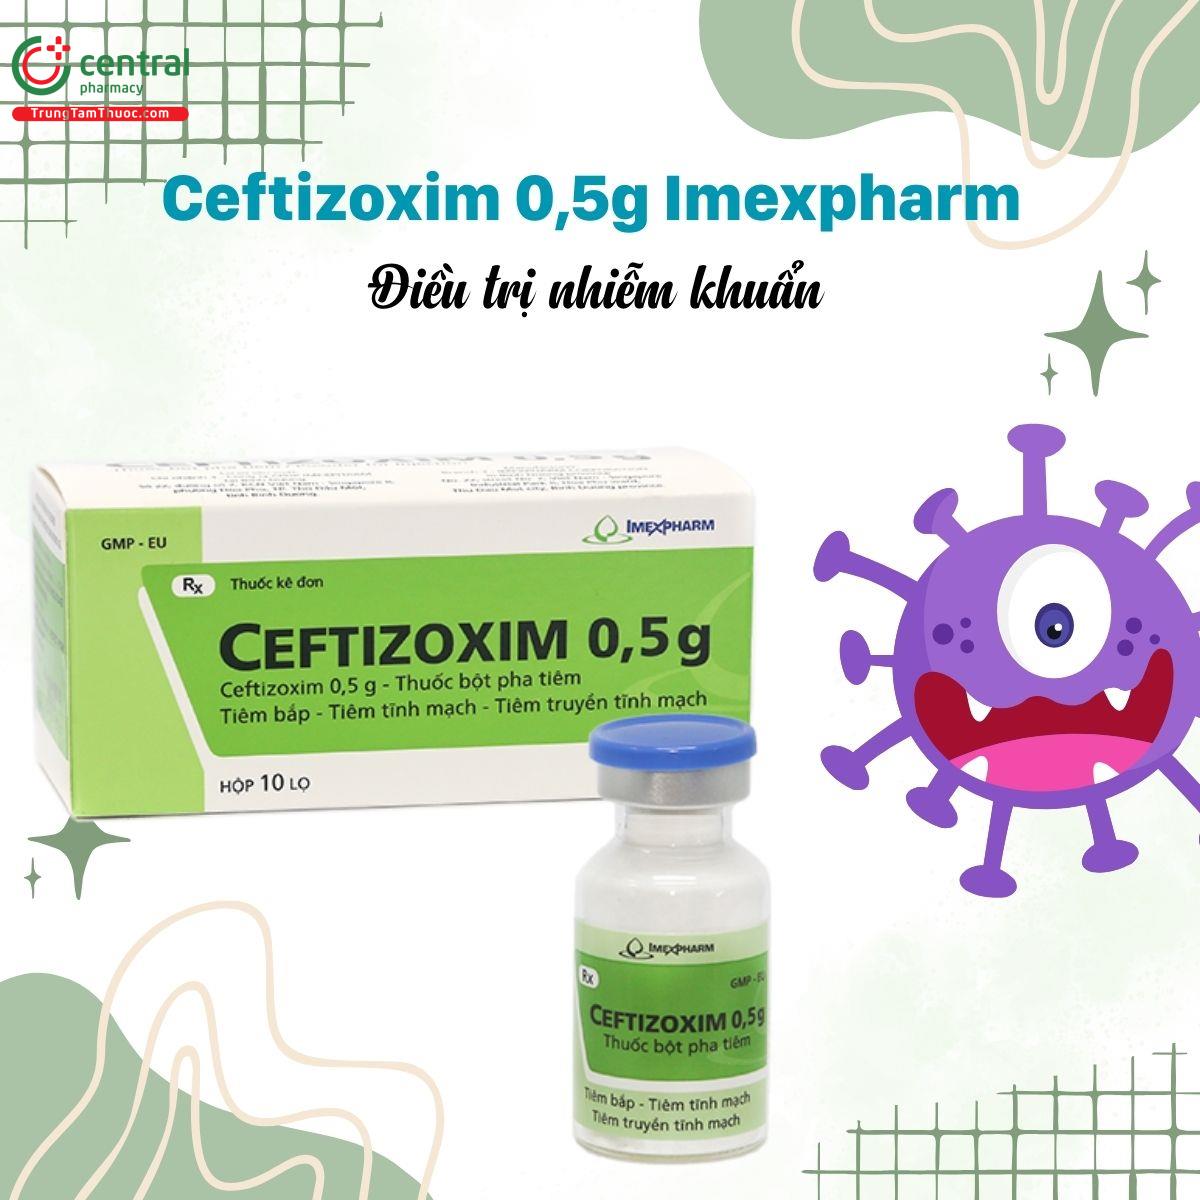 Thuốc Ceftizoxim 0,5g Imexpharm - điều trị các bệnh nhiễm khuẩn